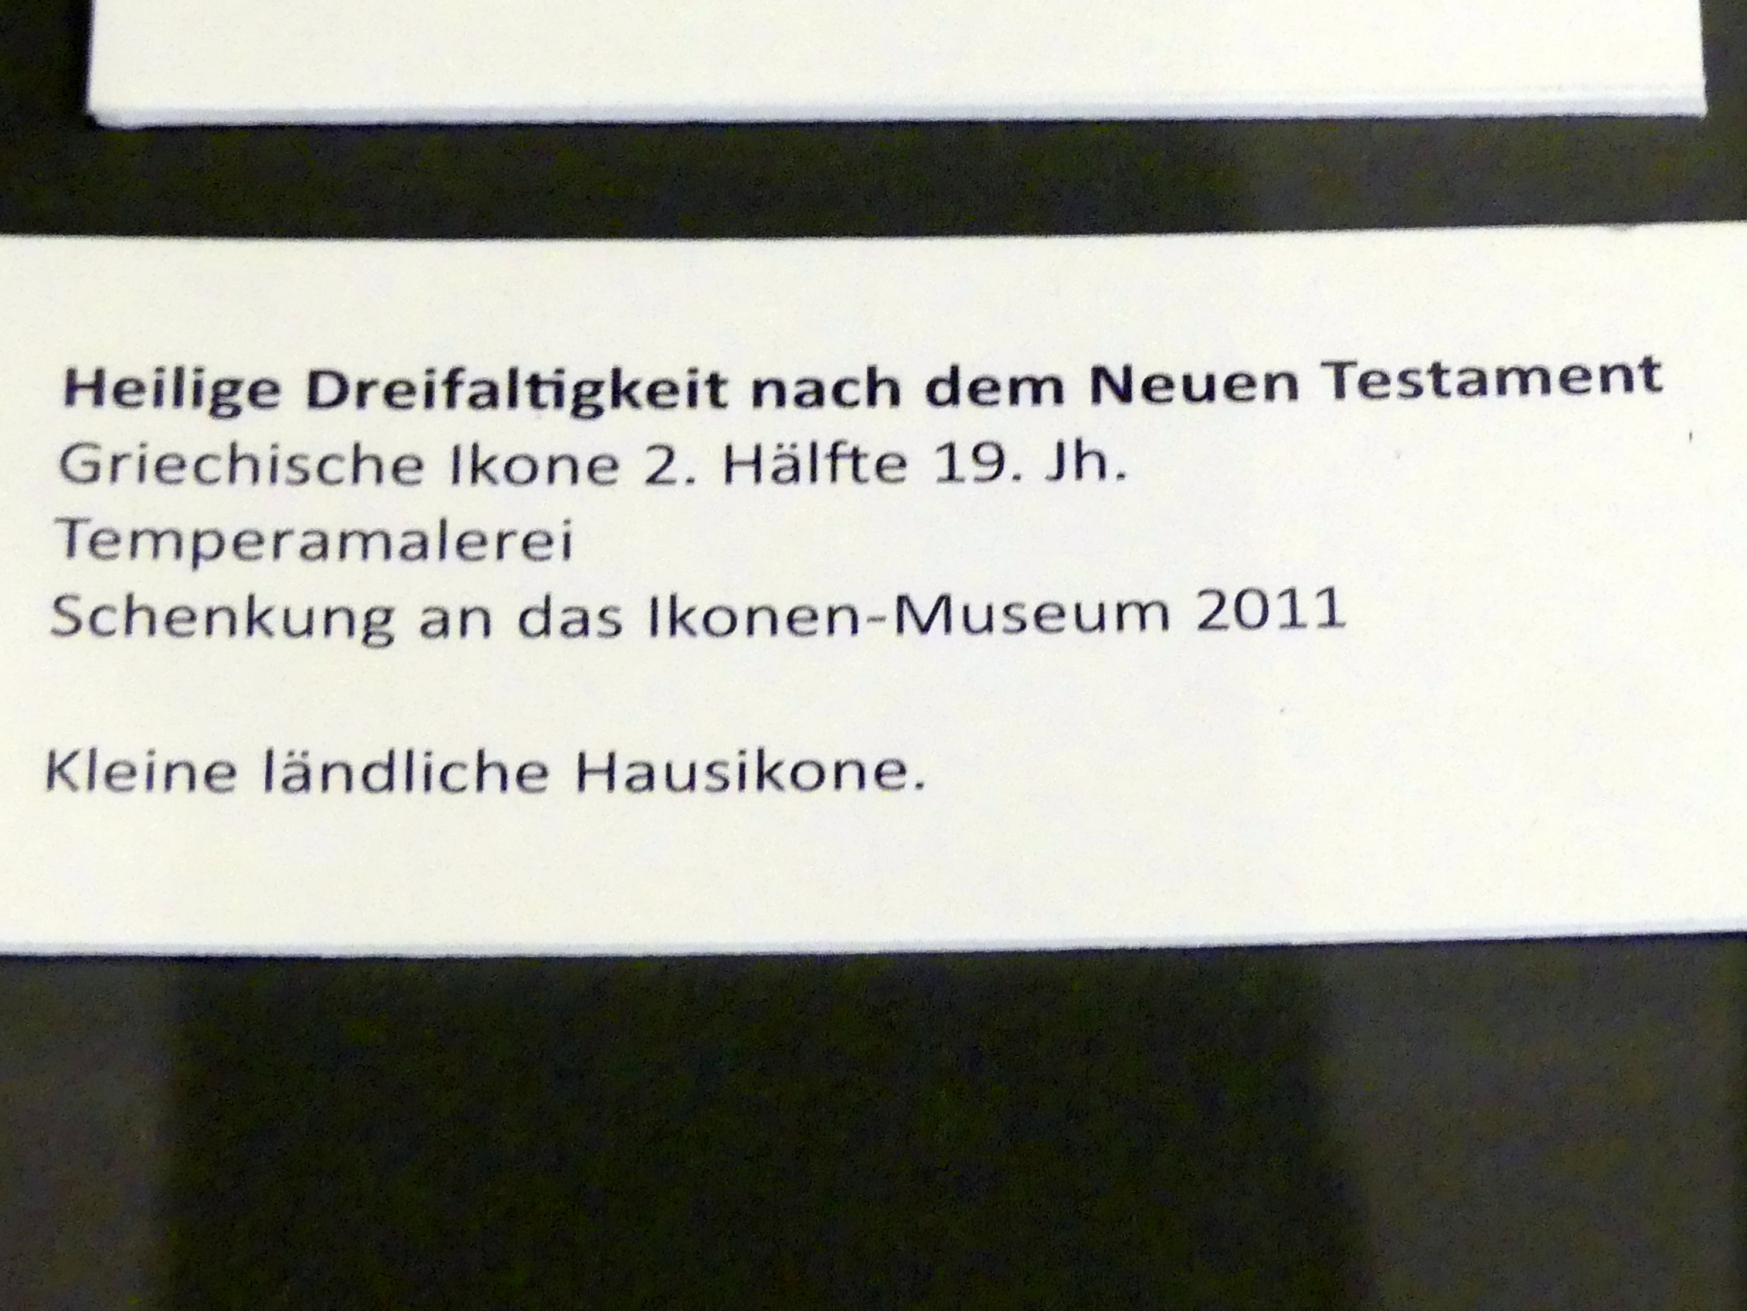 Heilige Dreifaltigkeit nach dem Neuen Testament, Frankfurt am Main, Ikonen-Museum, Obergeschoss, 2. Hälfte 19. Jhd., Bild 2/2